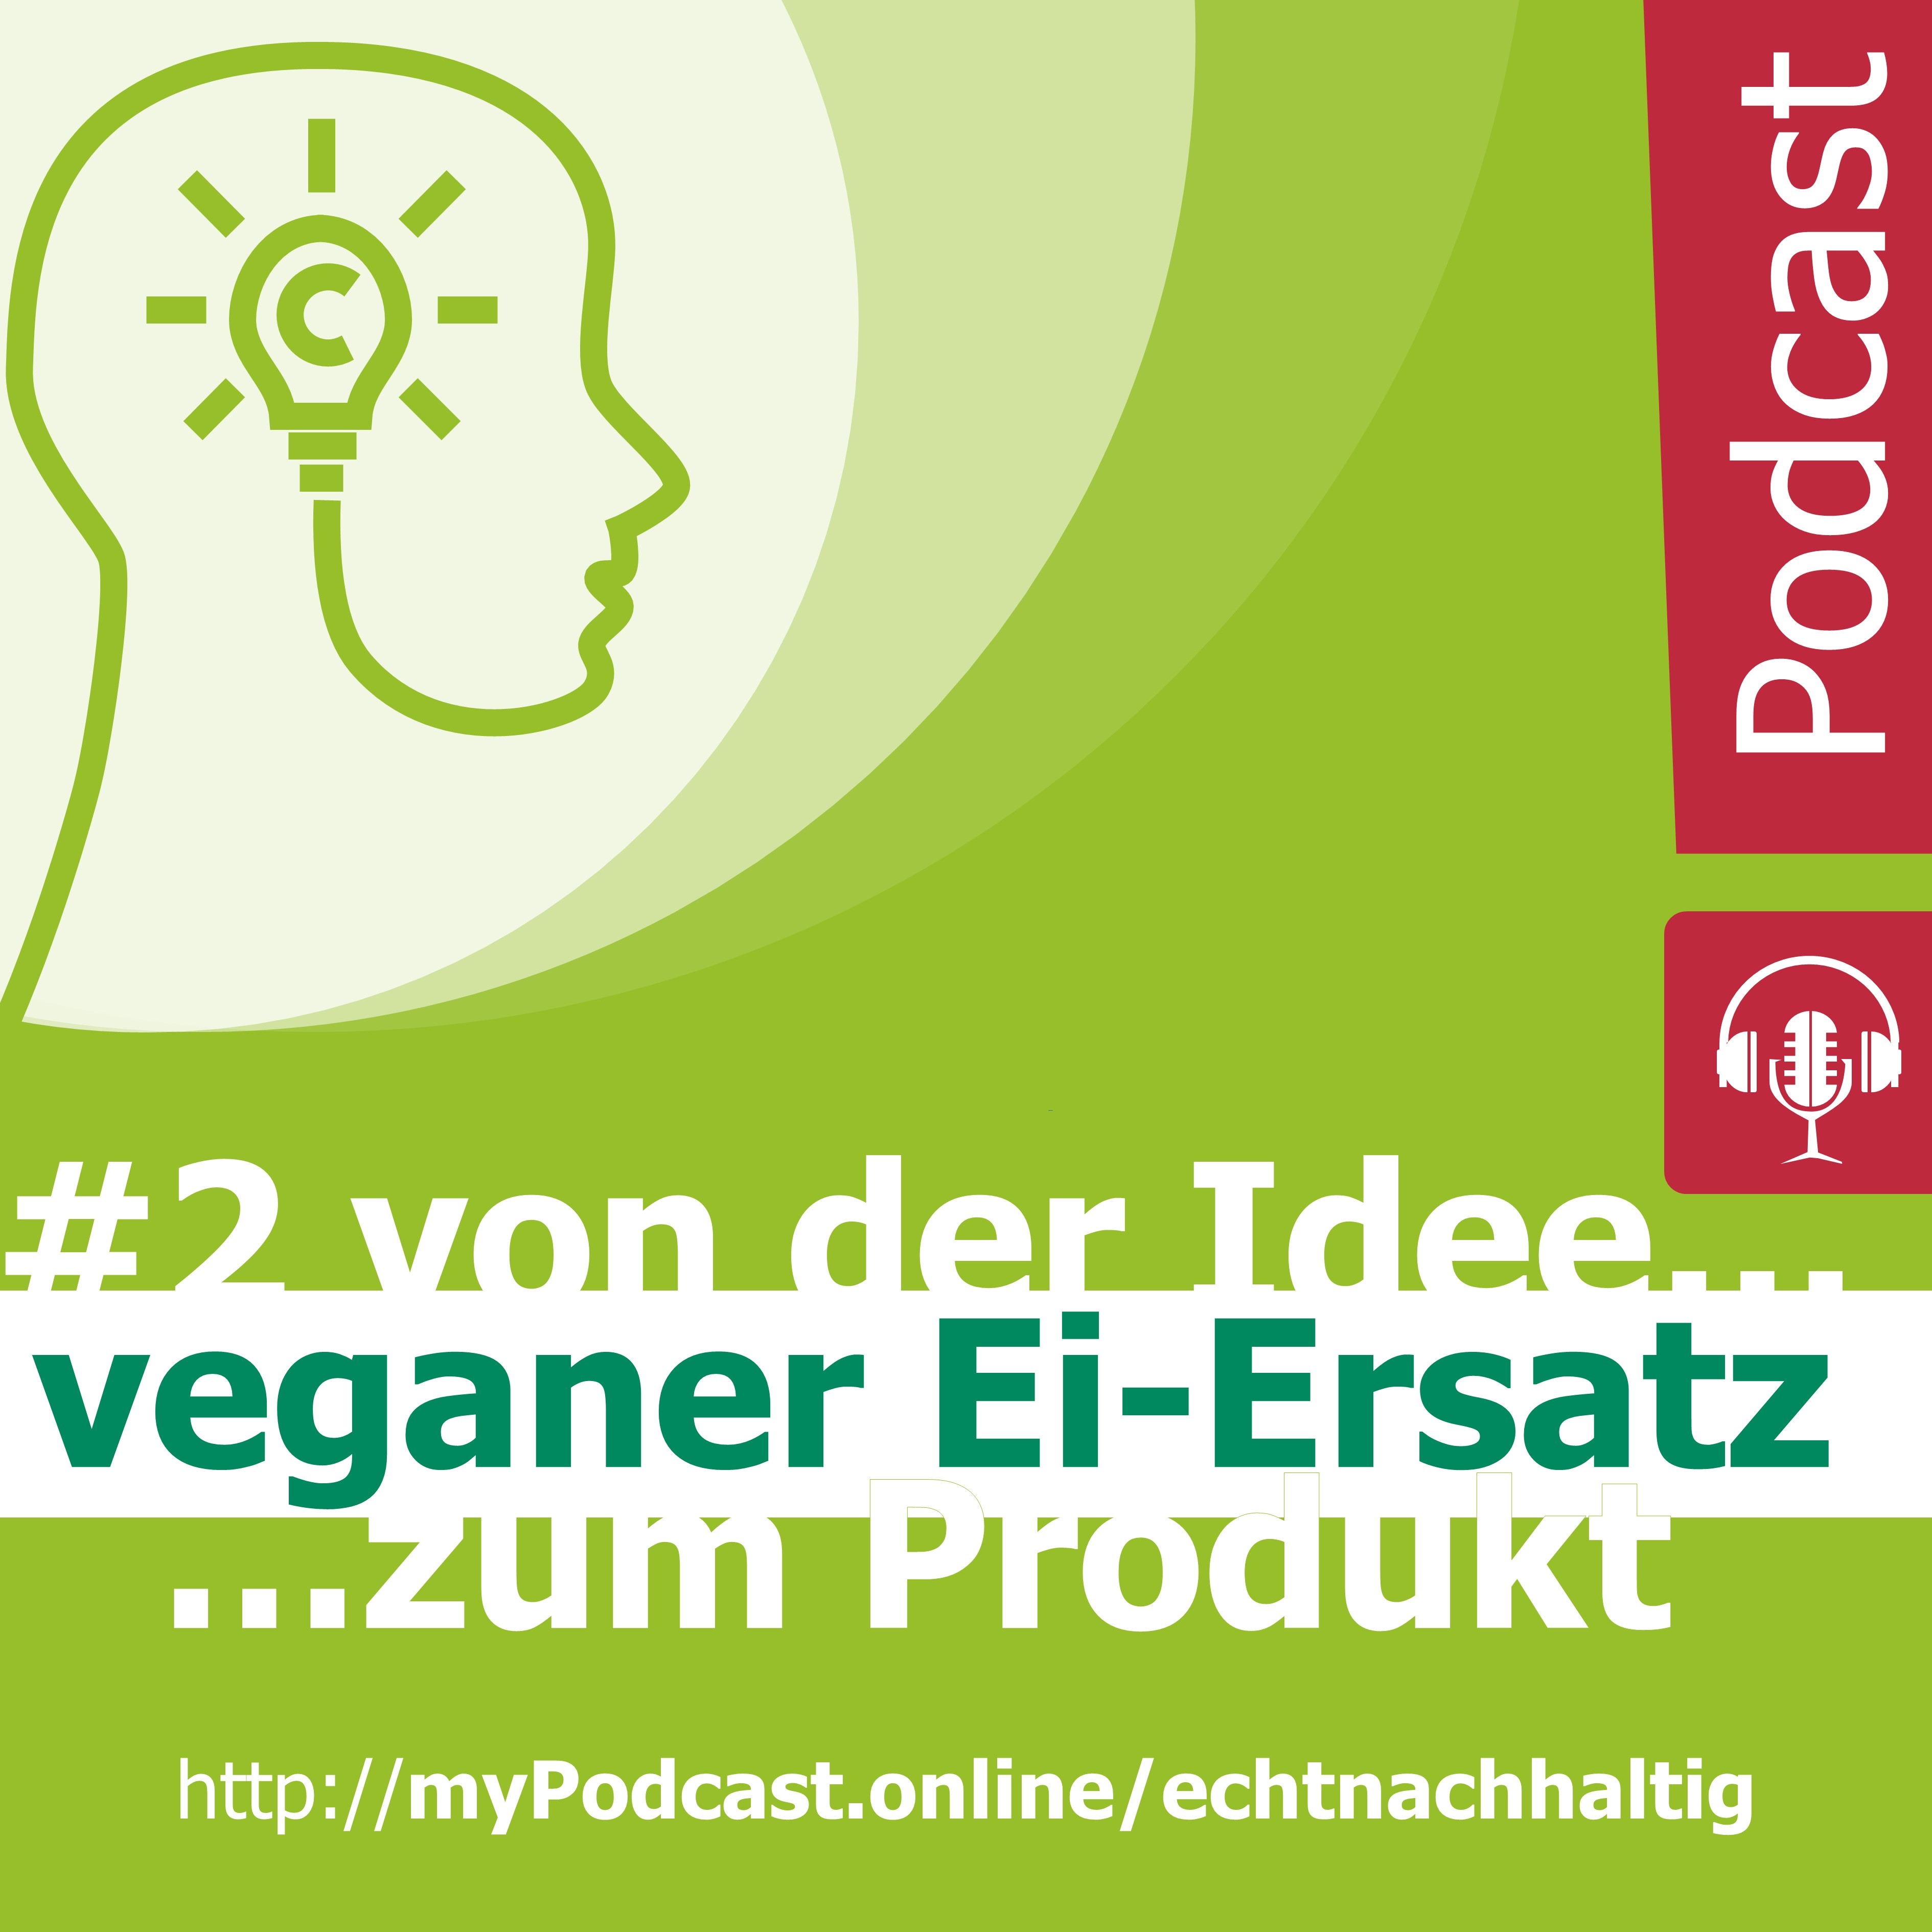 Episode 2 - von der Idee zum Produkt : MyEy - veganer Ei-Ersatz. Christian Huber im Gespräch mit Chris Geiser